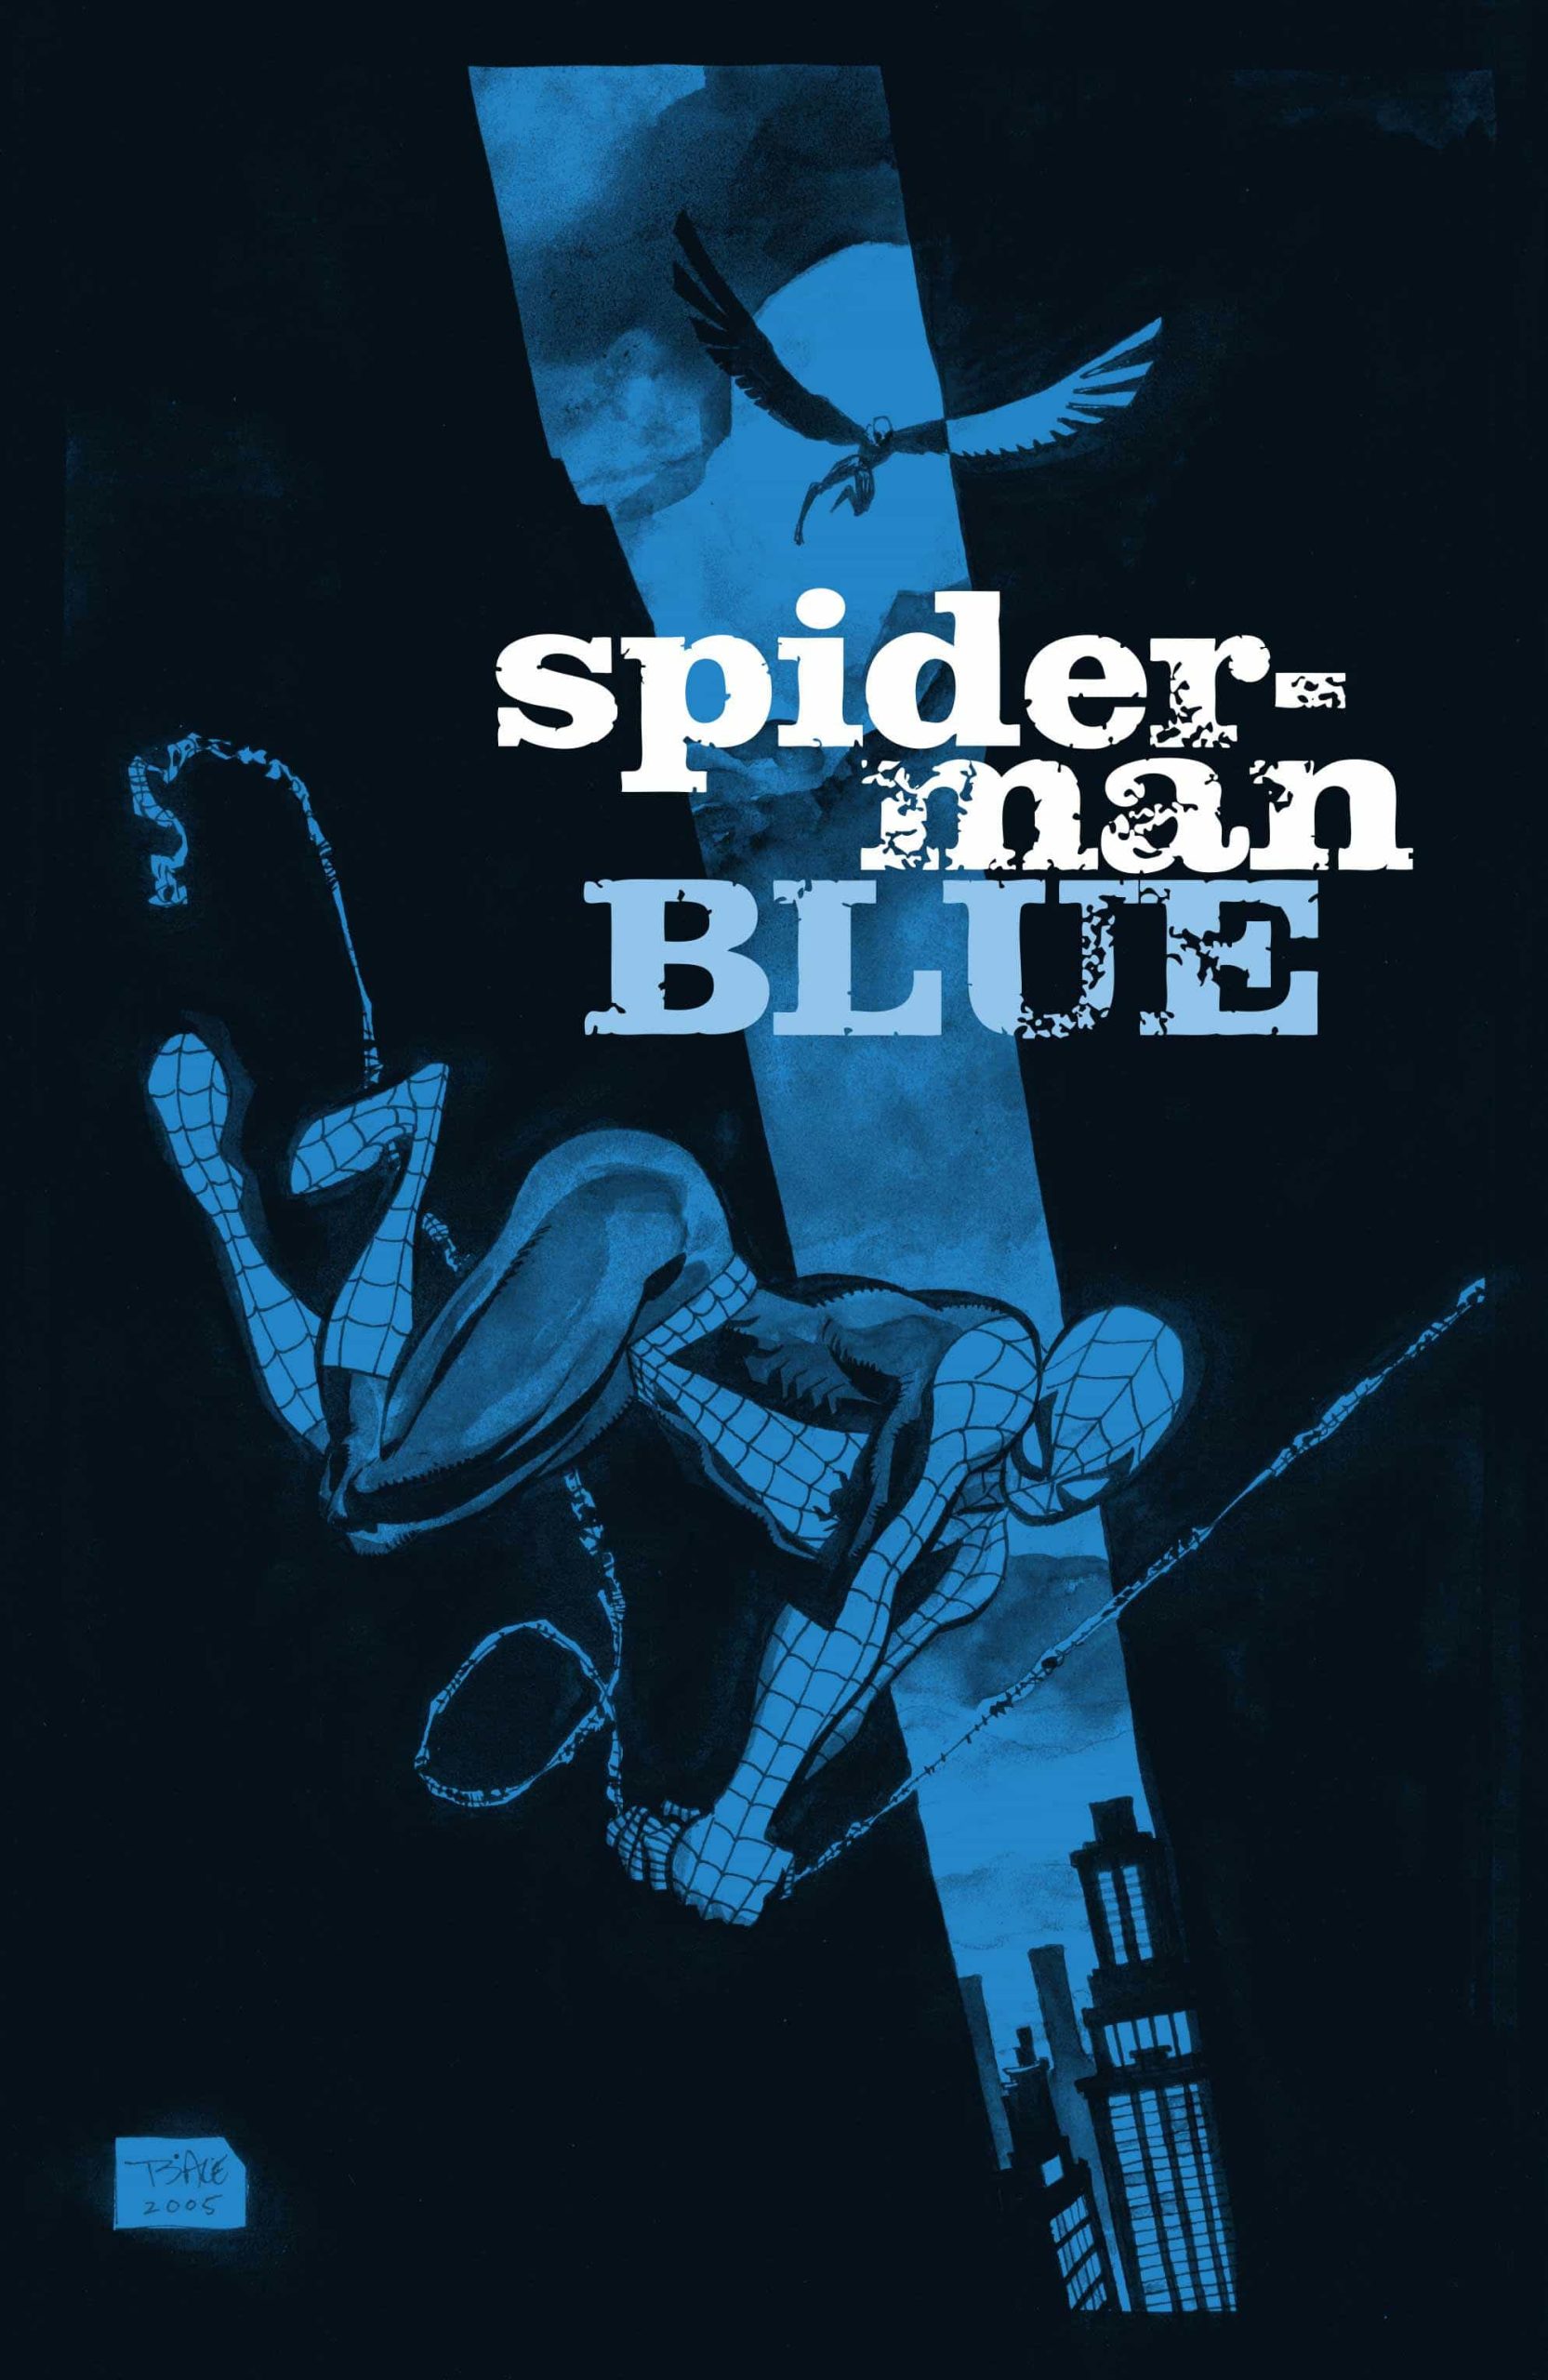 https://langgeek.net/wp-content/webpc-passthru.php?src=https://langgeek.net/wp-content/uploads/2022/11/Spider-Man-Blue-151-scaled.jpg&nocache=1